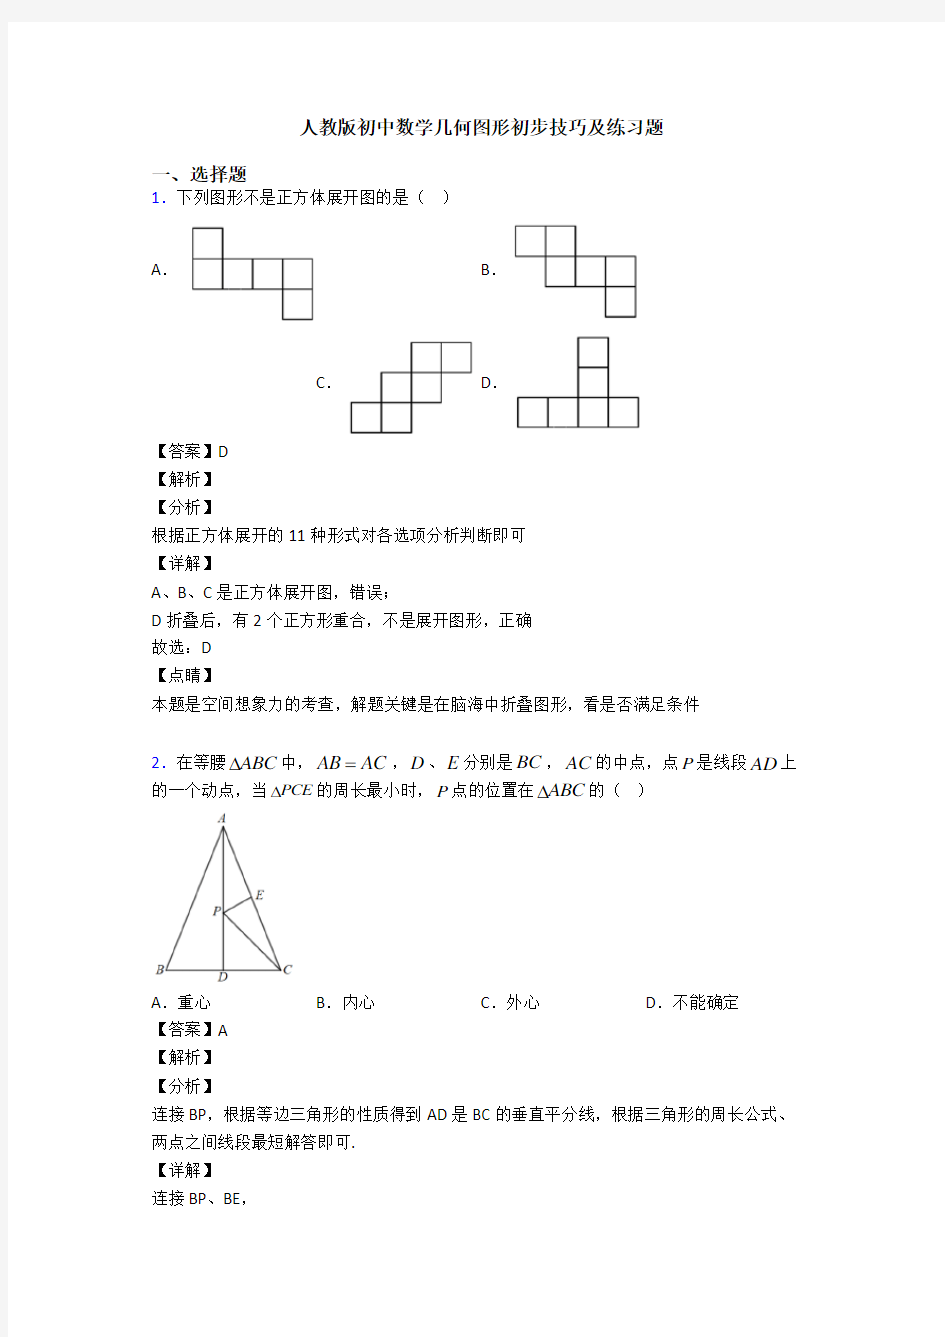 人教版初中数学几何图形初步技巧及练习题